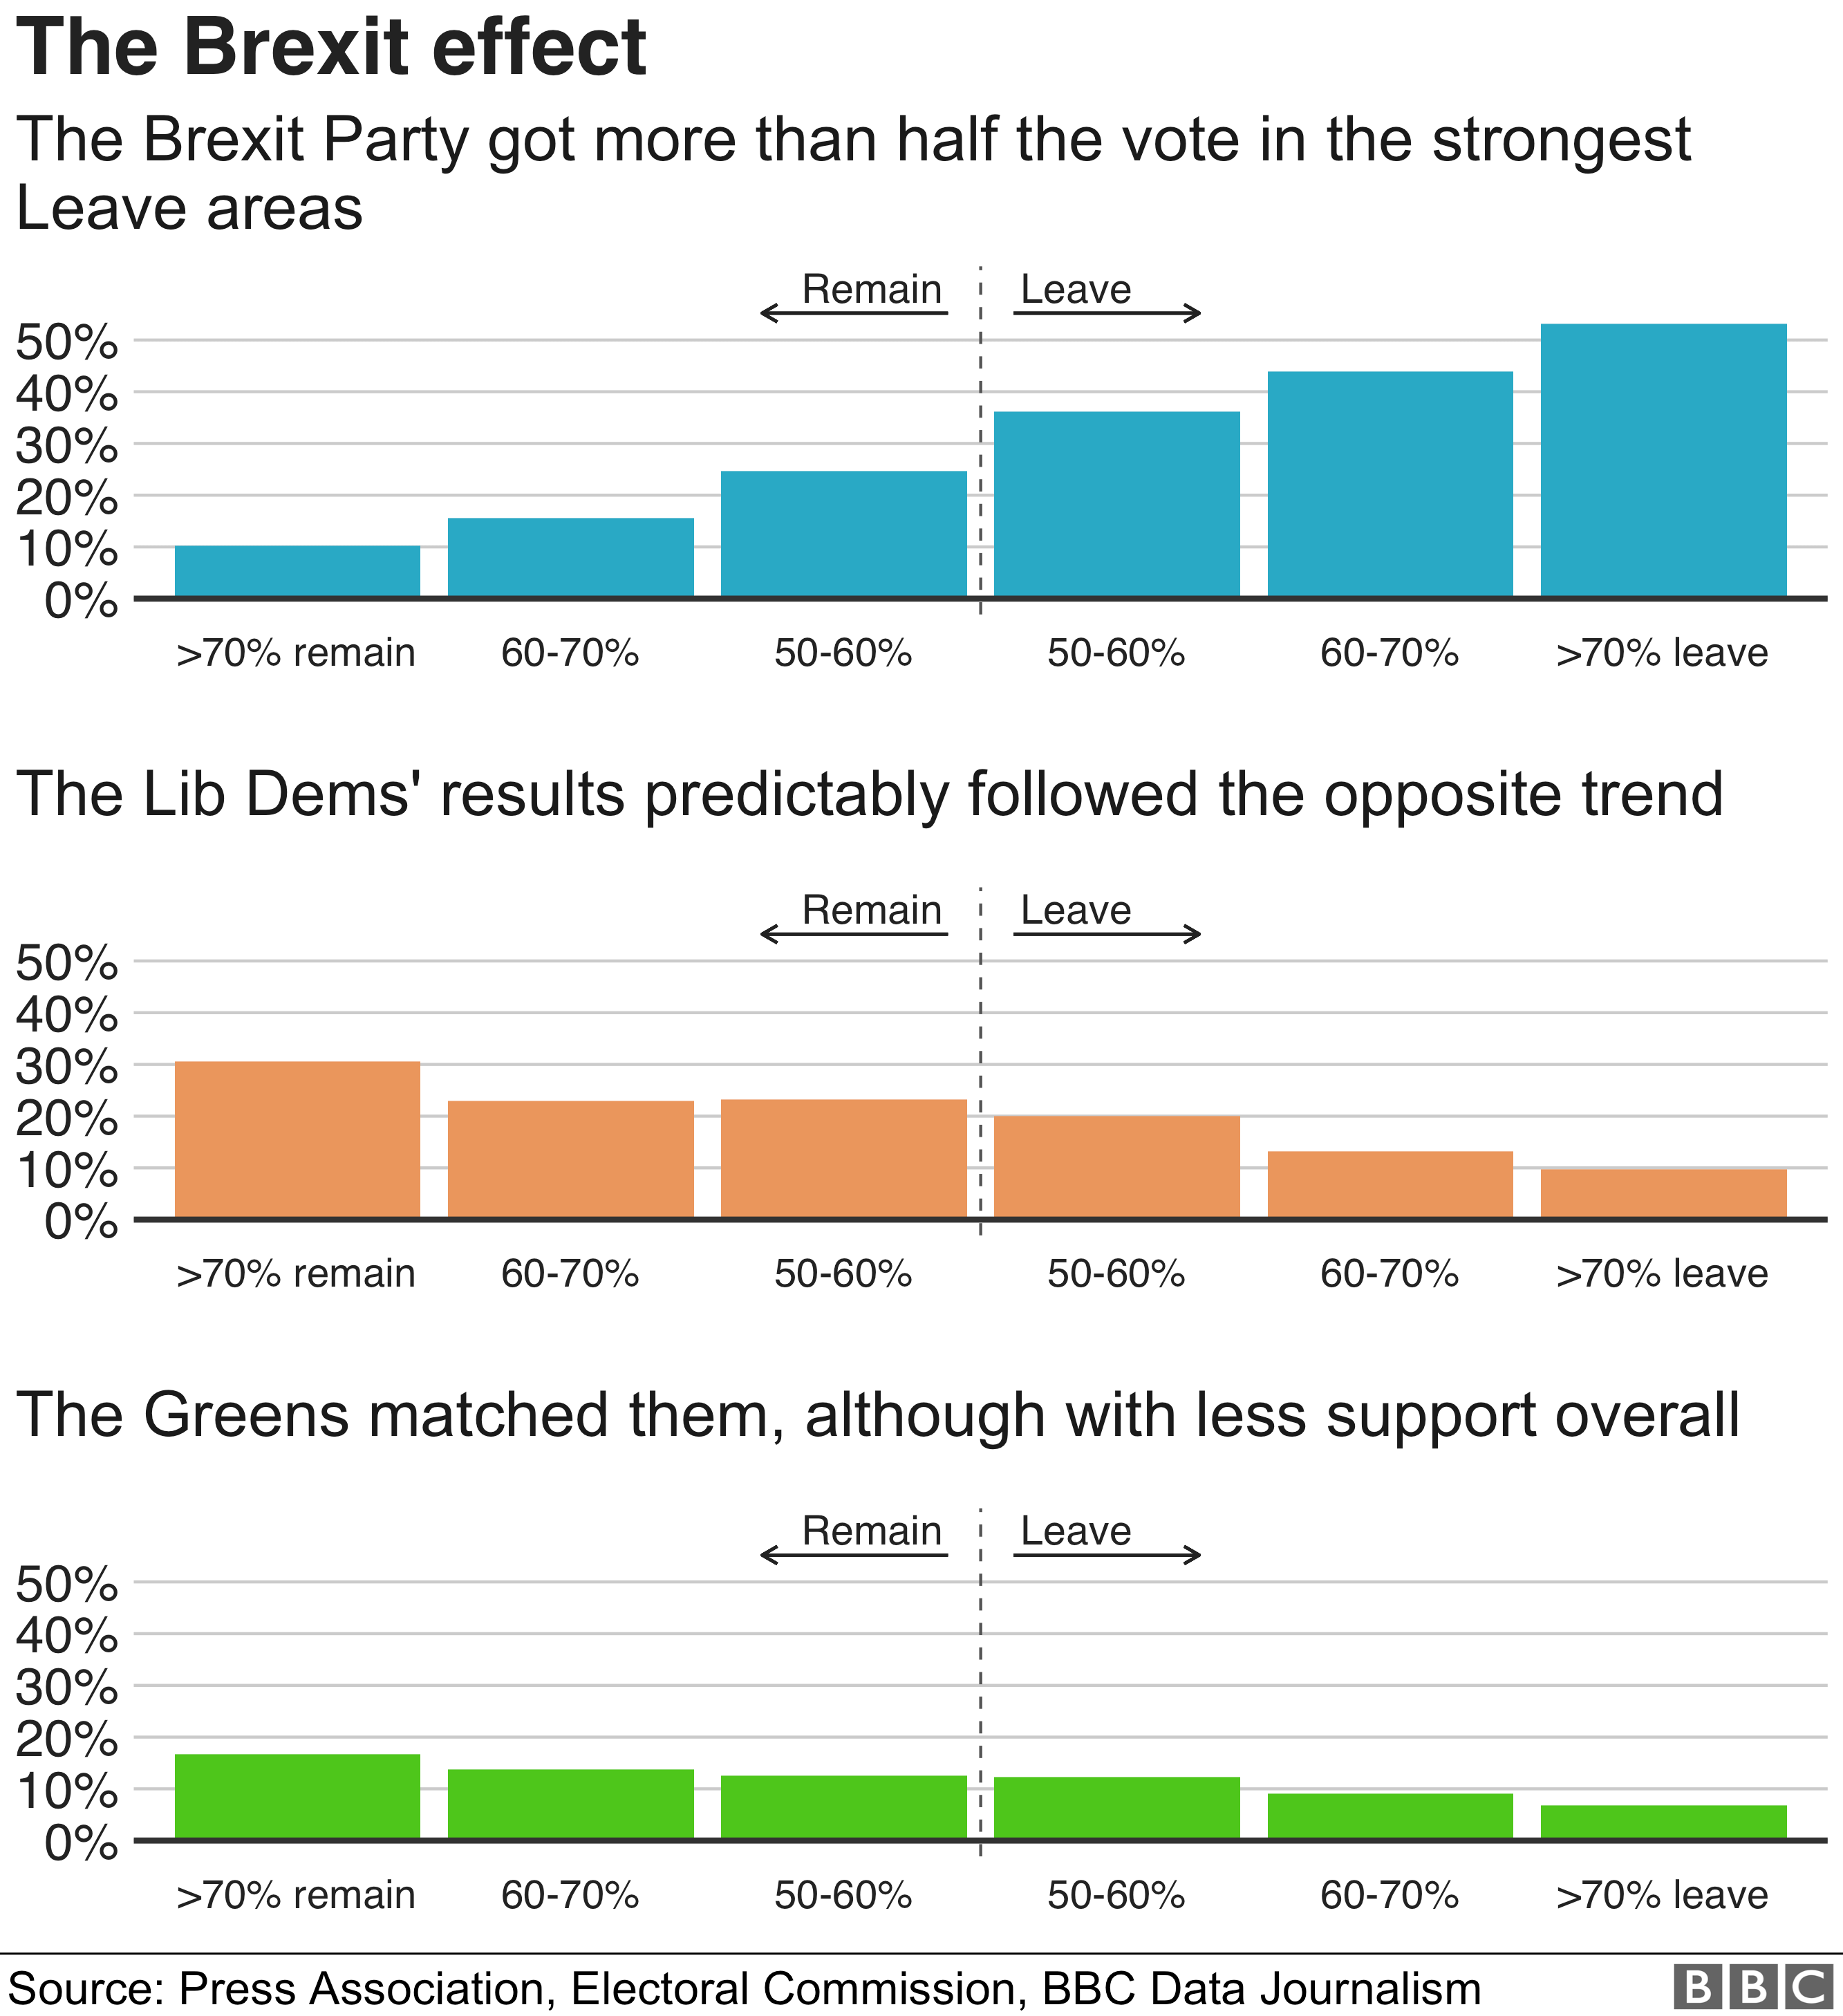 Партия Brexit получила более половины голосов в самых высоких областях, связанных с отпуском